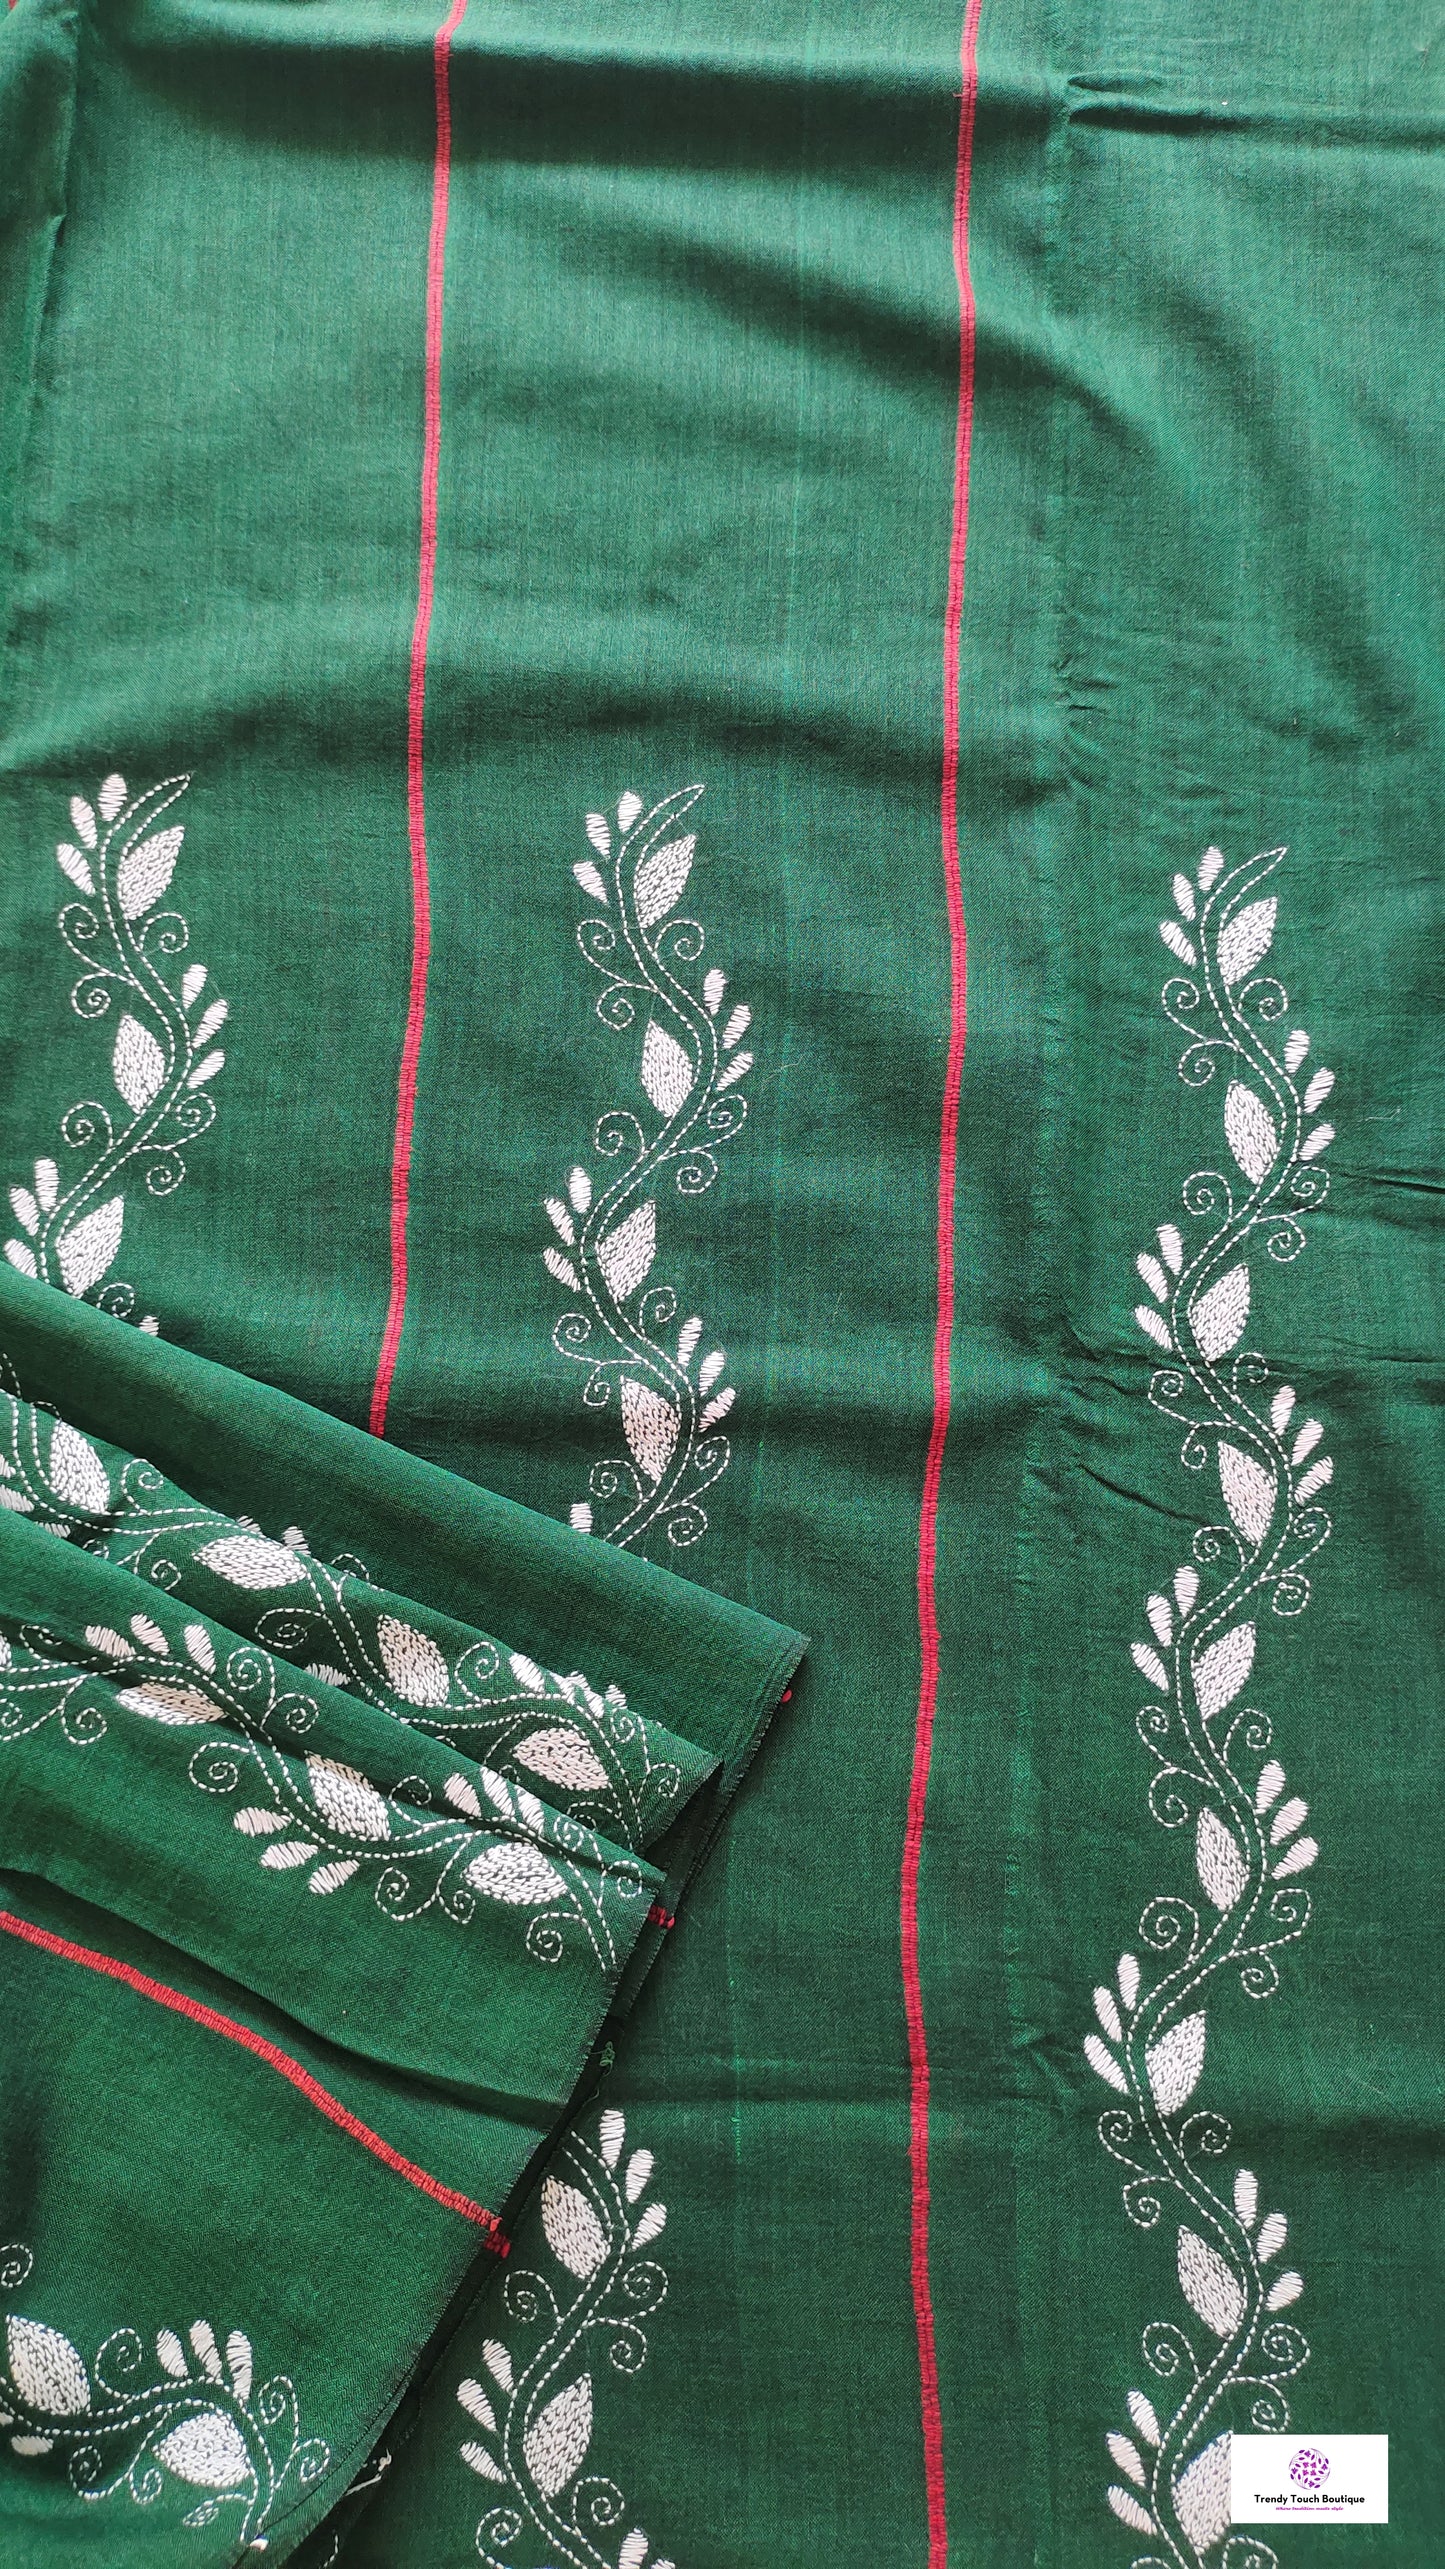 Bottle dark green and white kantha handembroidered designer khesh khadi cotton handloom saree best summer fabric with blouse piece best price wedding functions